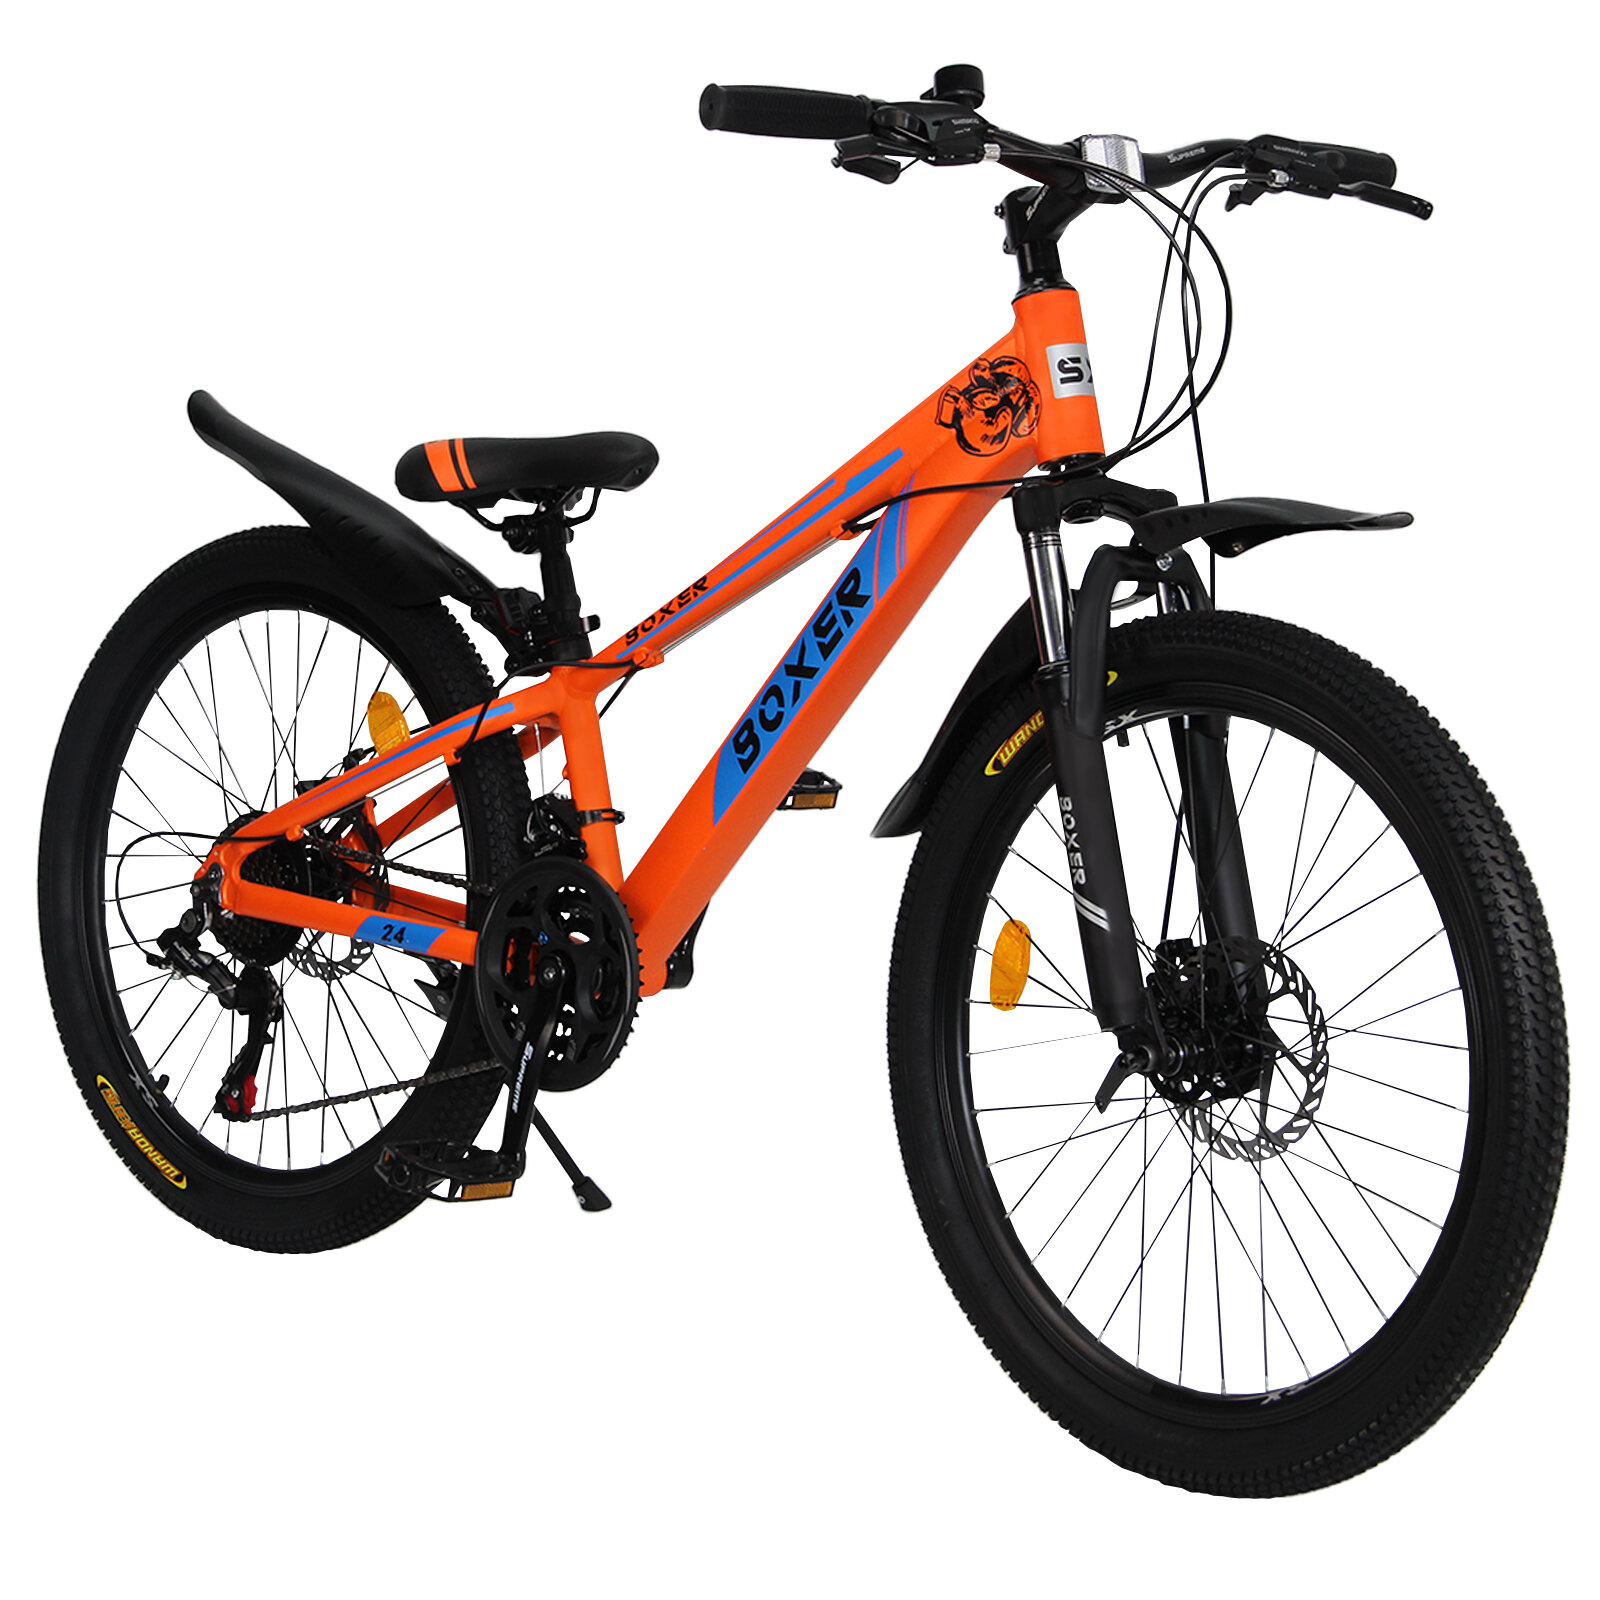 Горный велосипед детский скоростной Boxer 24" оранжевый, 8-14 лет, 21 скорость (Shimano tourney)